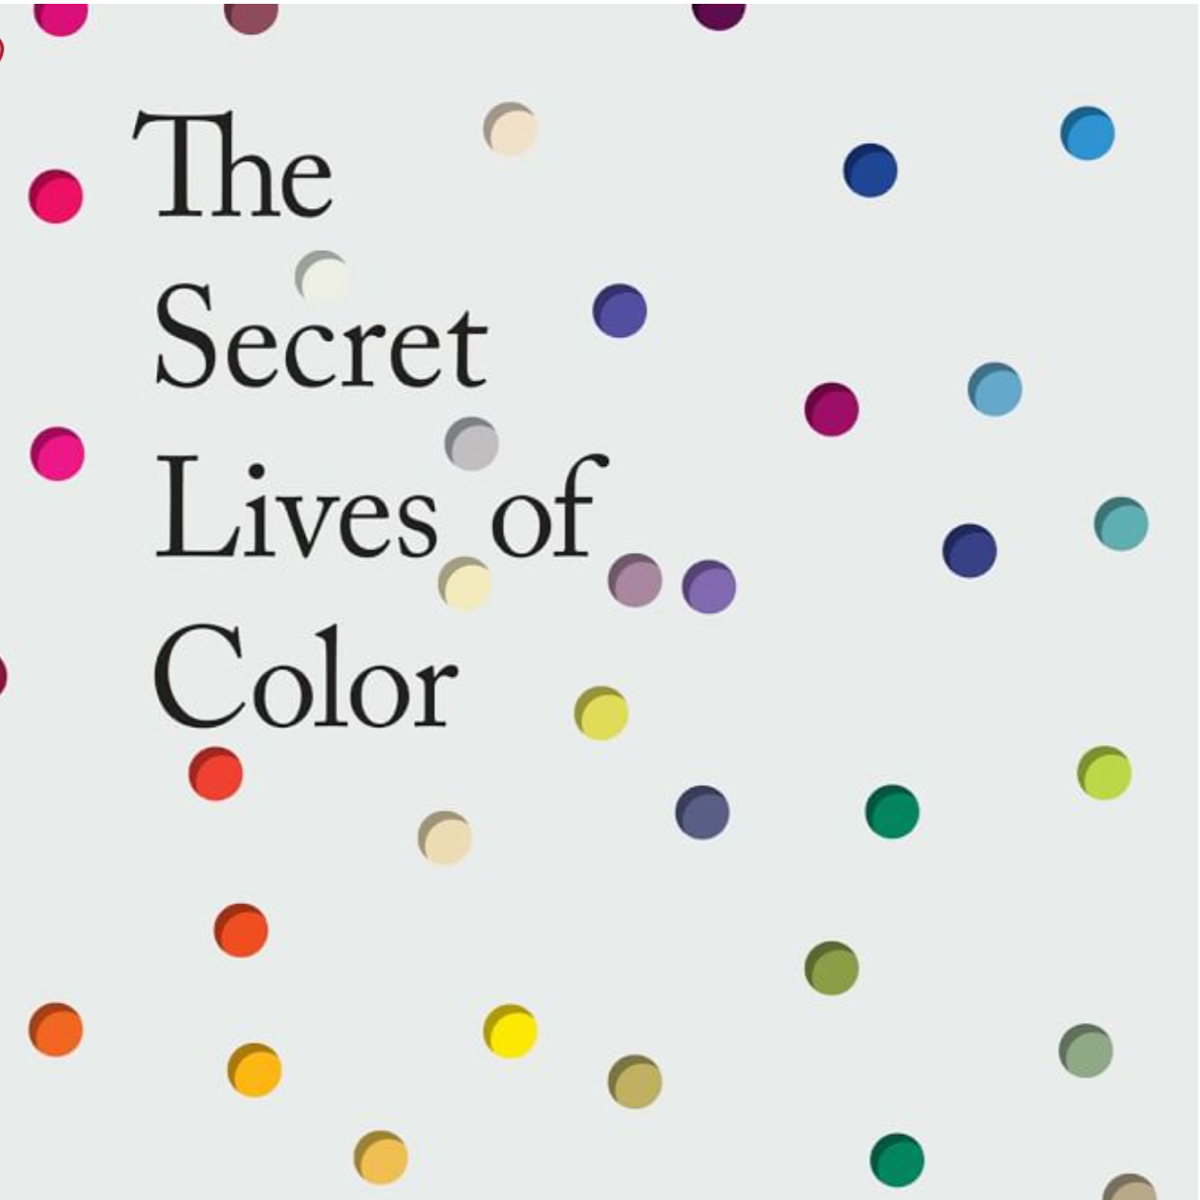 The Secret Lives of Colors